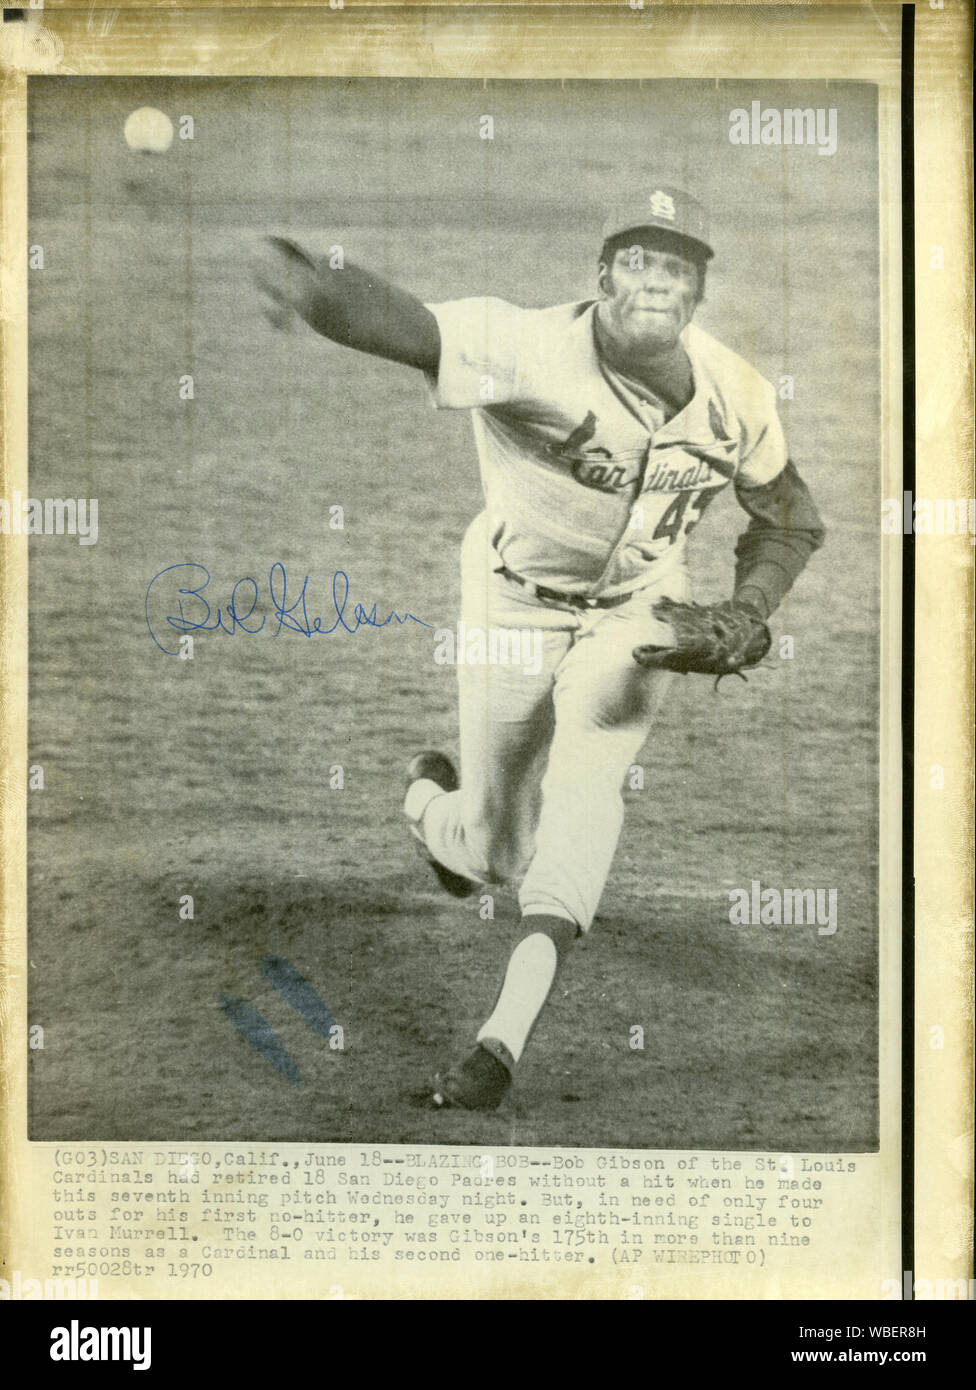 Coleccionable vintage autografiada AP noticias foto de transmisión por cable de St. Louis Cardinals star pitcher Bob Gibson cerca de lanzamiento con un juego perfecto en contra de los San Diego Padres el 18 de junio de 1970 Foto de stock